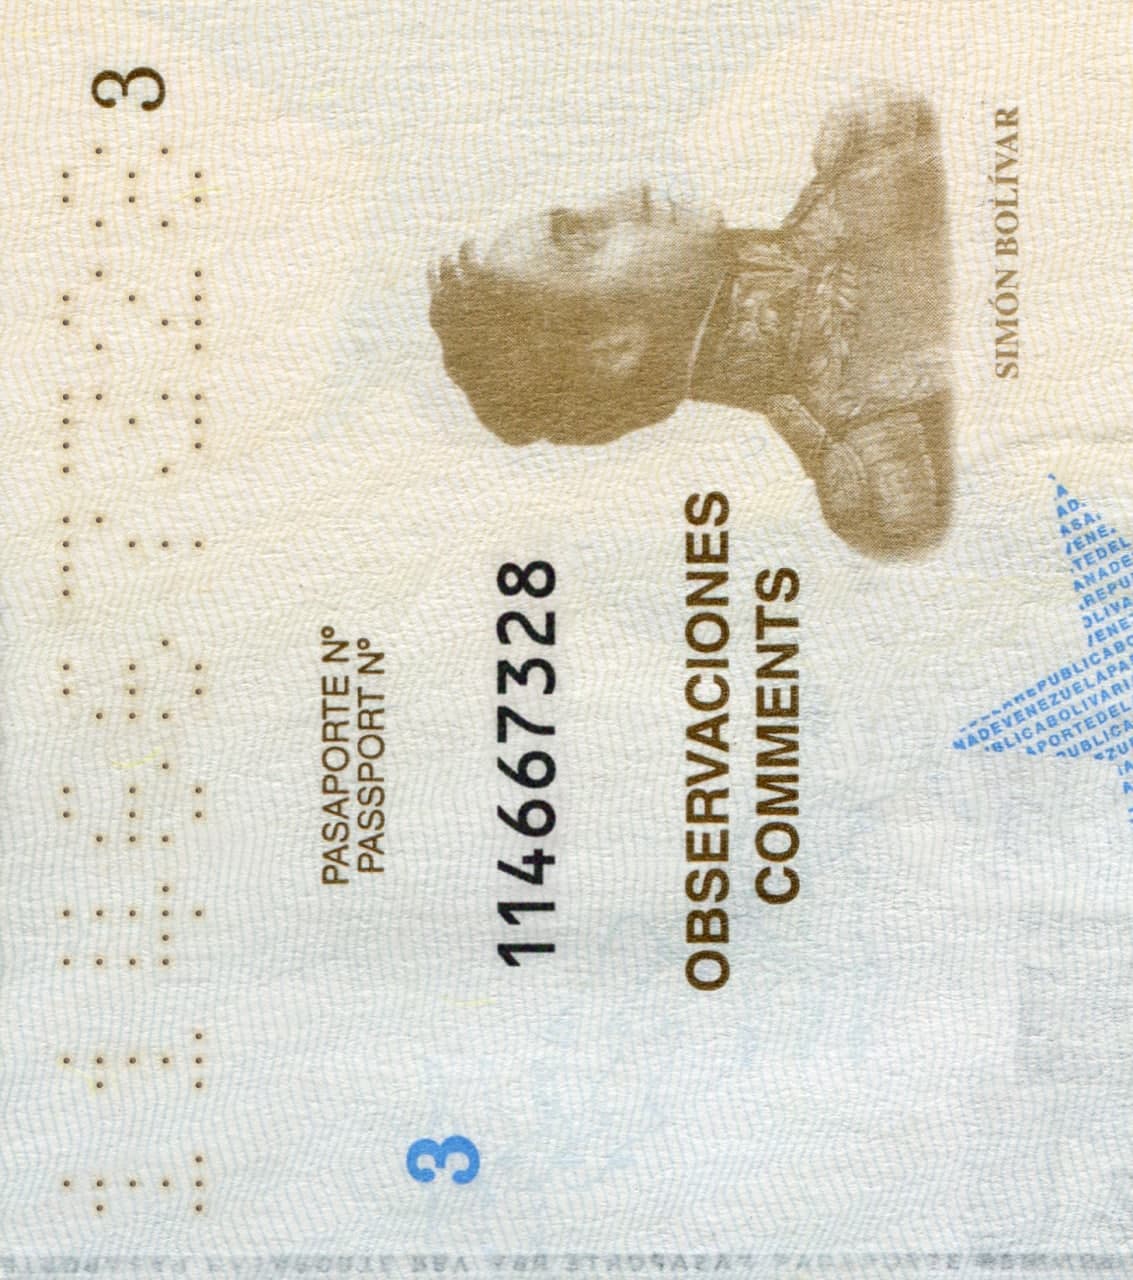 Venezuela Passport-4